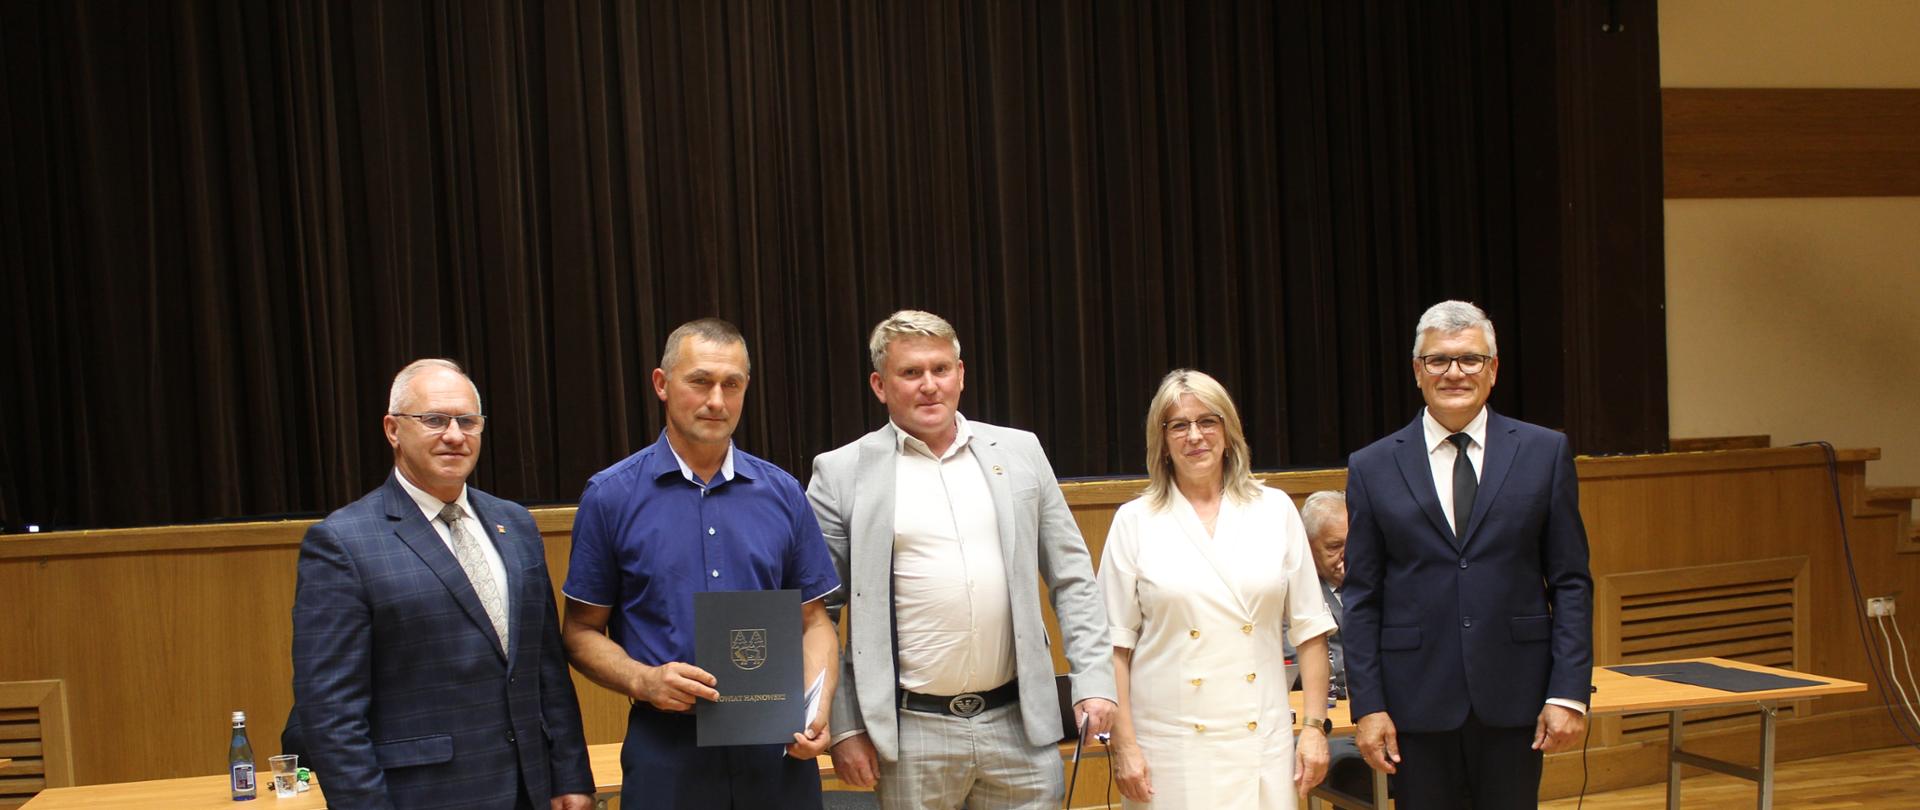 Nagrodzeni hodowcy pozują do wspólnego zdjęcia ze Starostą Hajnowski, Przewodniczącym Rady Powiatu i Wicestarostą